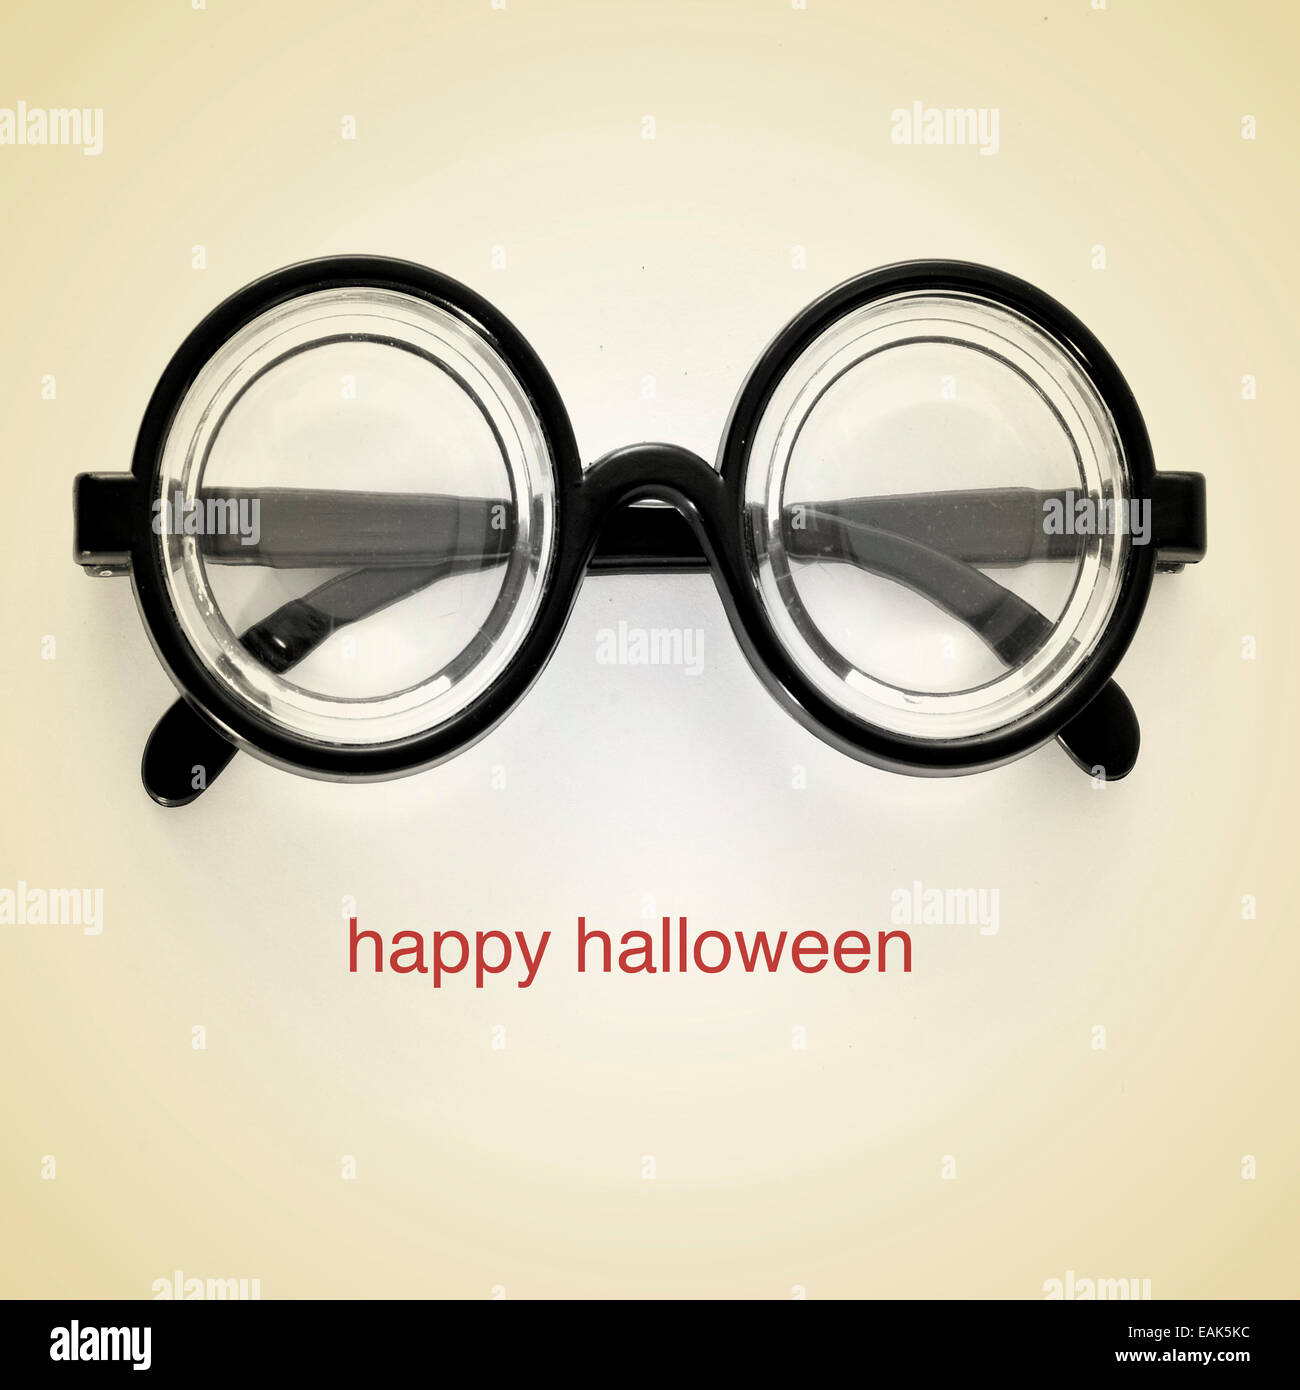 Bild von kurzsichtigen Brille und den Satz happy Halloween auf einem Beige Hintergrund, mit einem Retro-Effekt Stockfoto